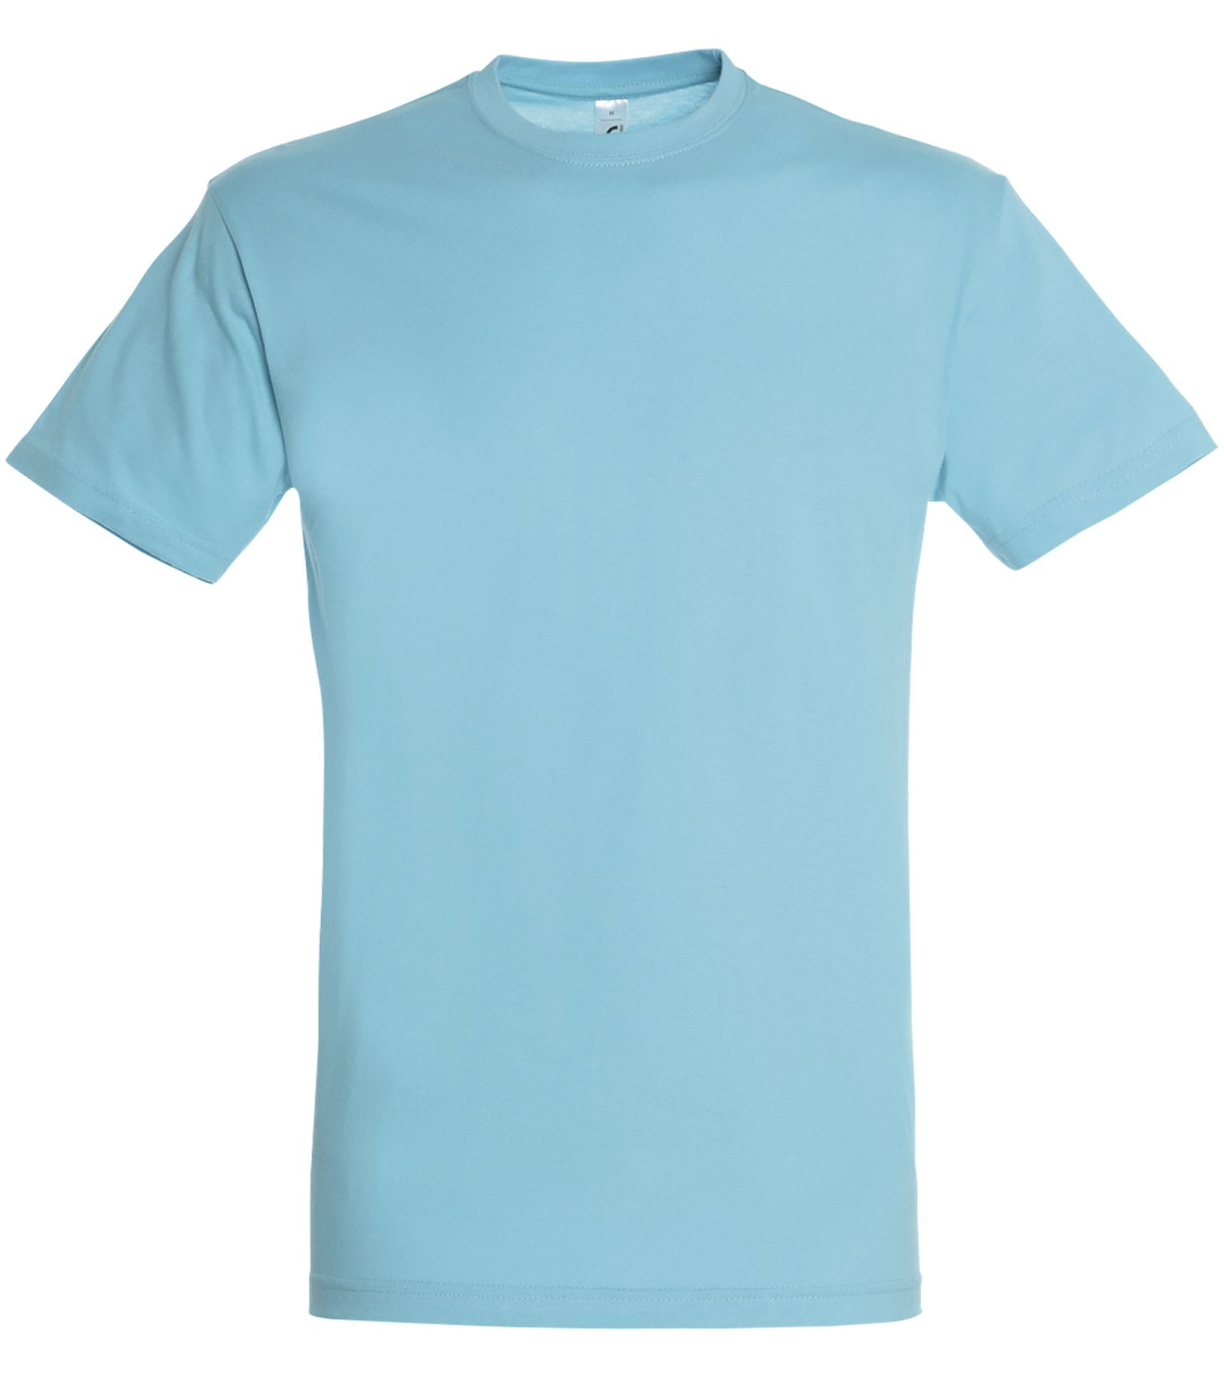 SOĽS Regent Uni tričko SL11380 Atoll blue S